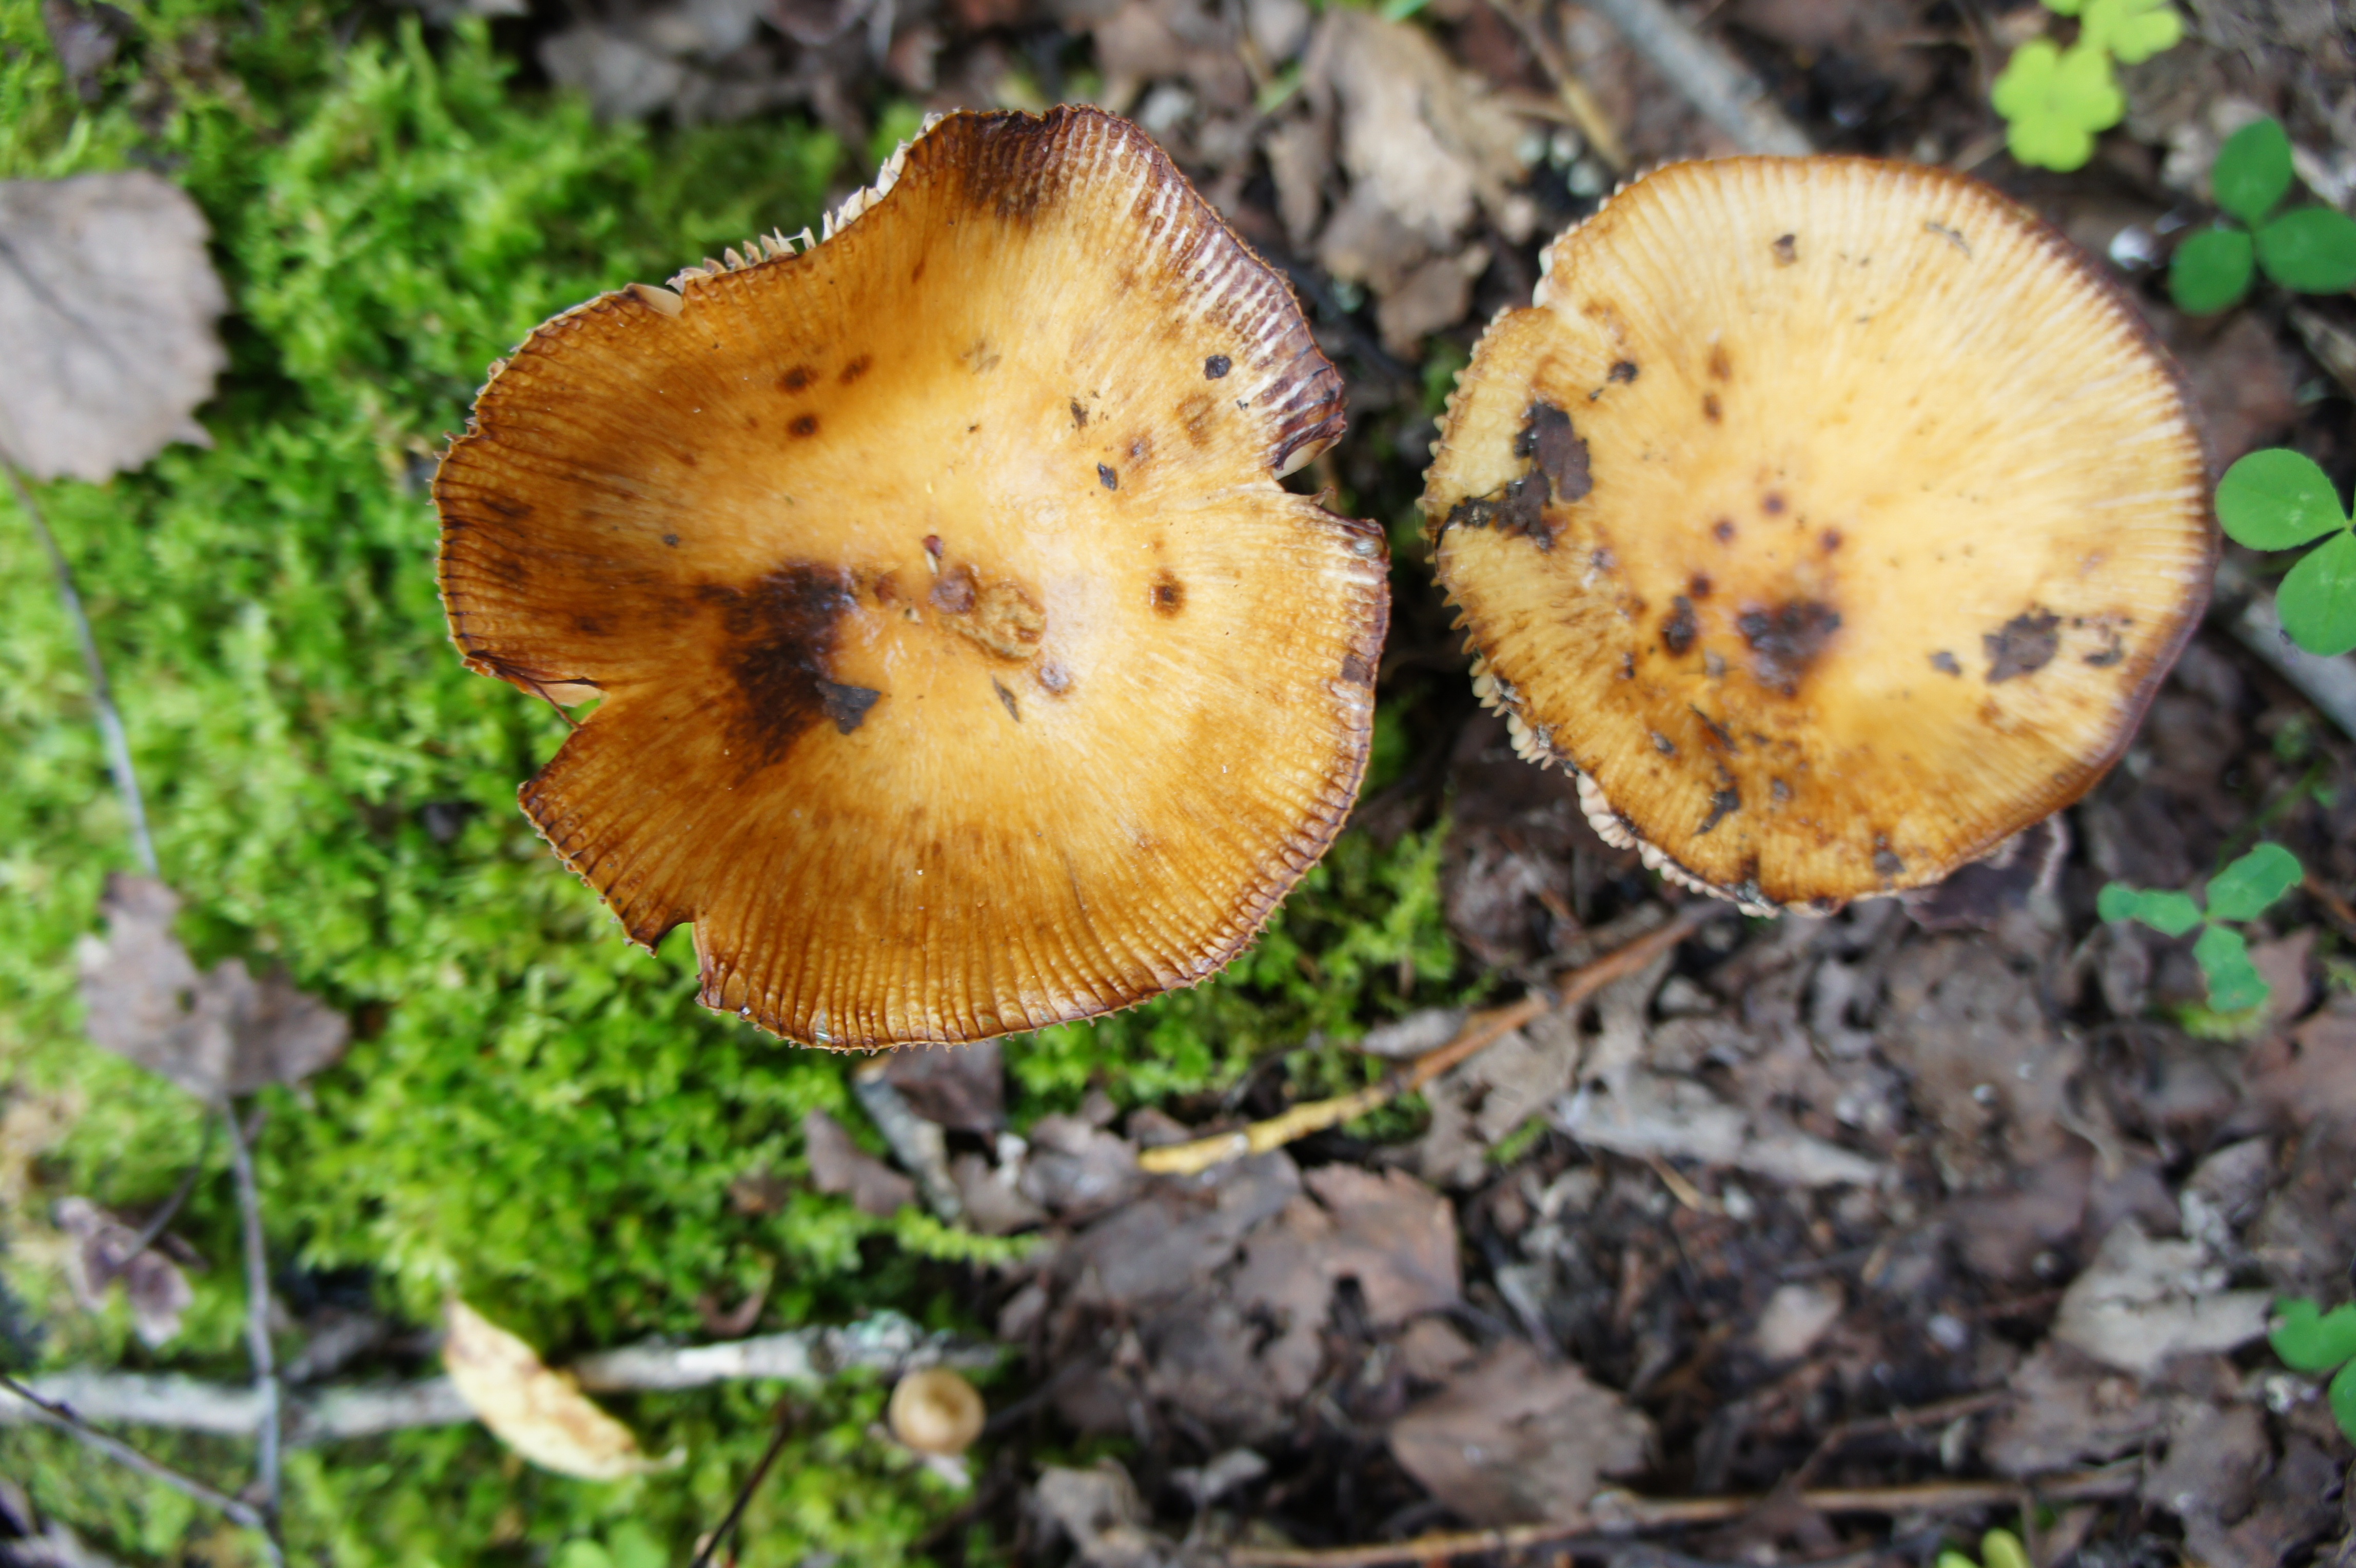 грибы растущие в сосновом лесу фото